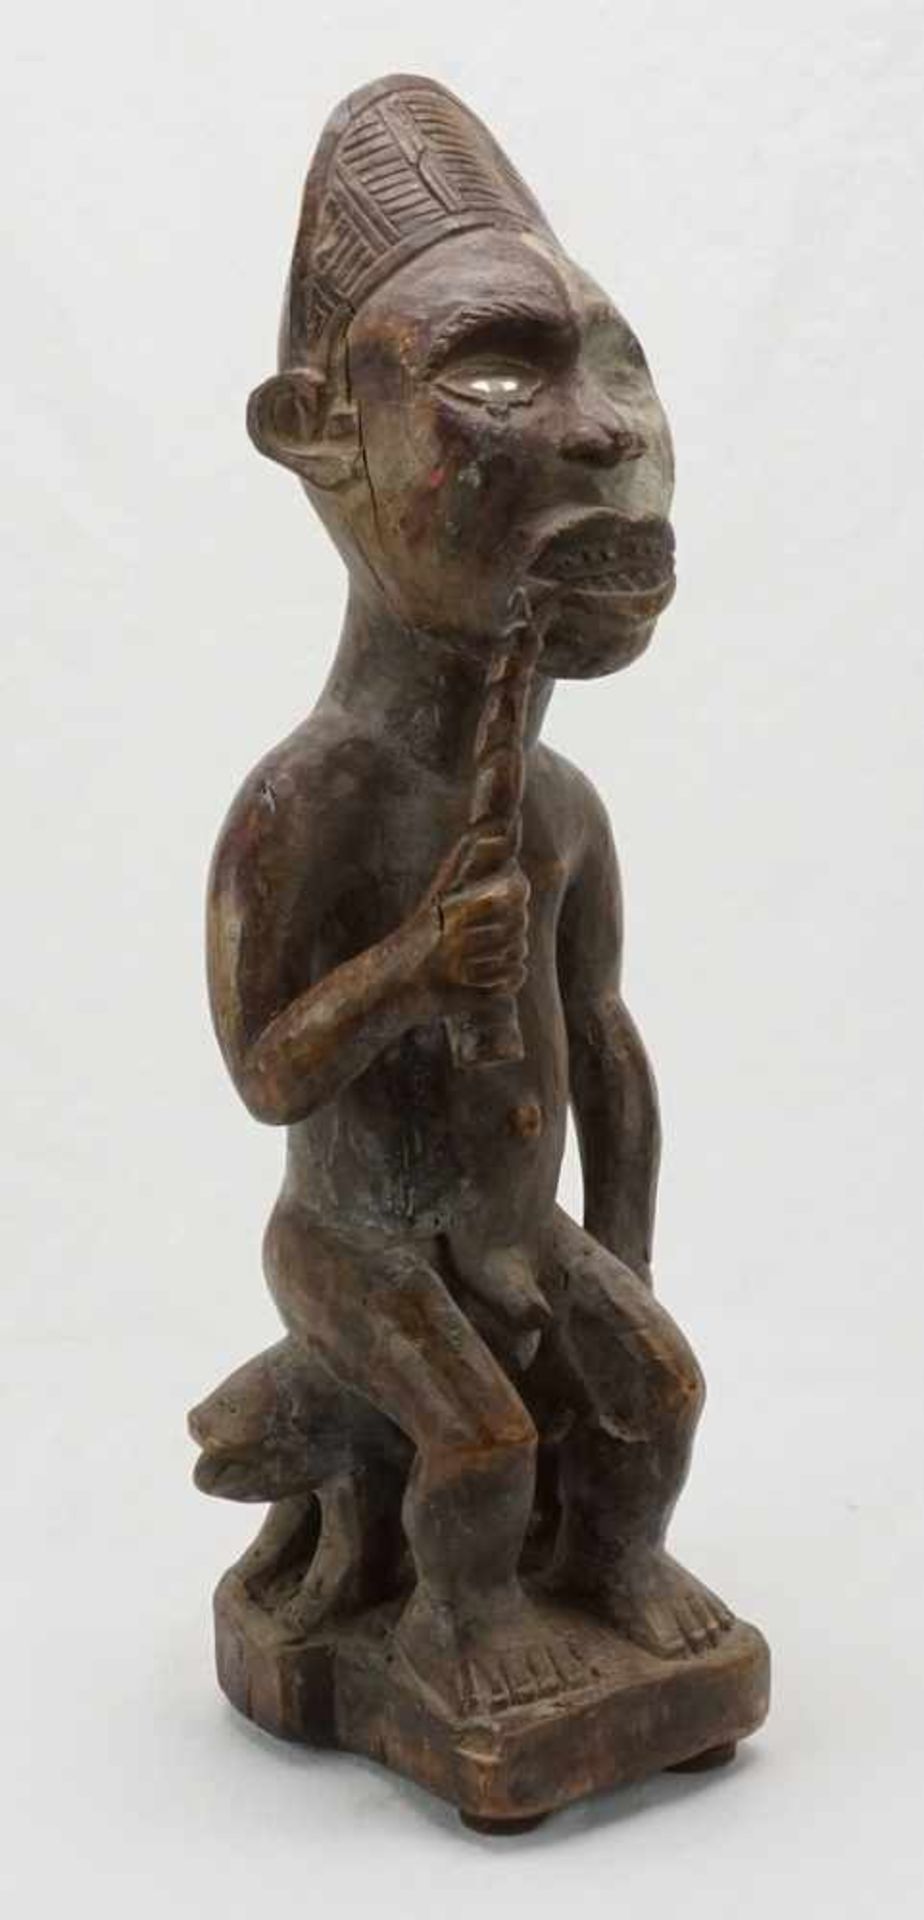 Vili Würdenträger, Gabun, DR Kongo, 20. Jh.Holz, König auf Thron sitzend, in der rechten Hand eine